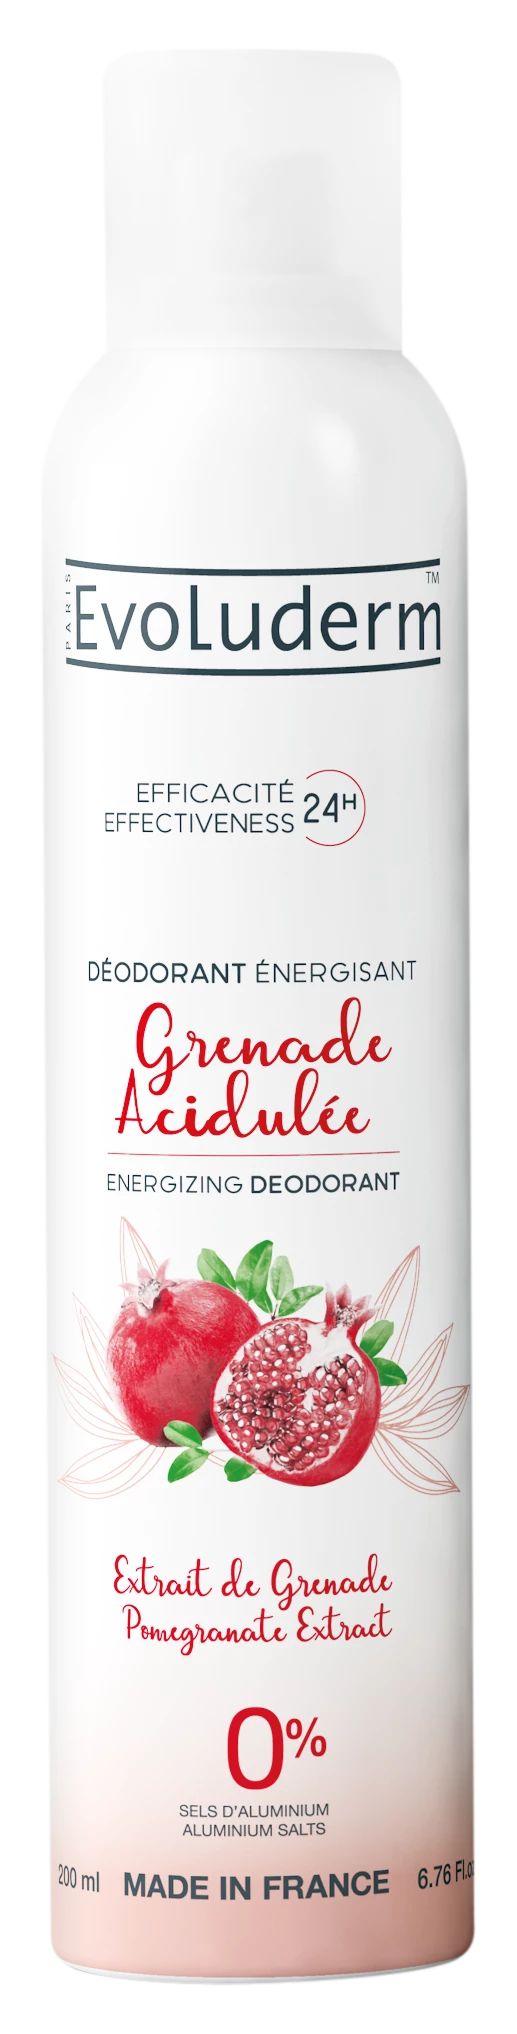 Estratto Genade Deodorante Acidulato Genade, 200ml - EVOLUDERM